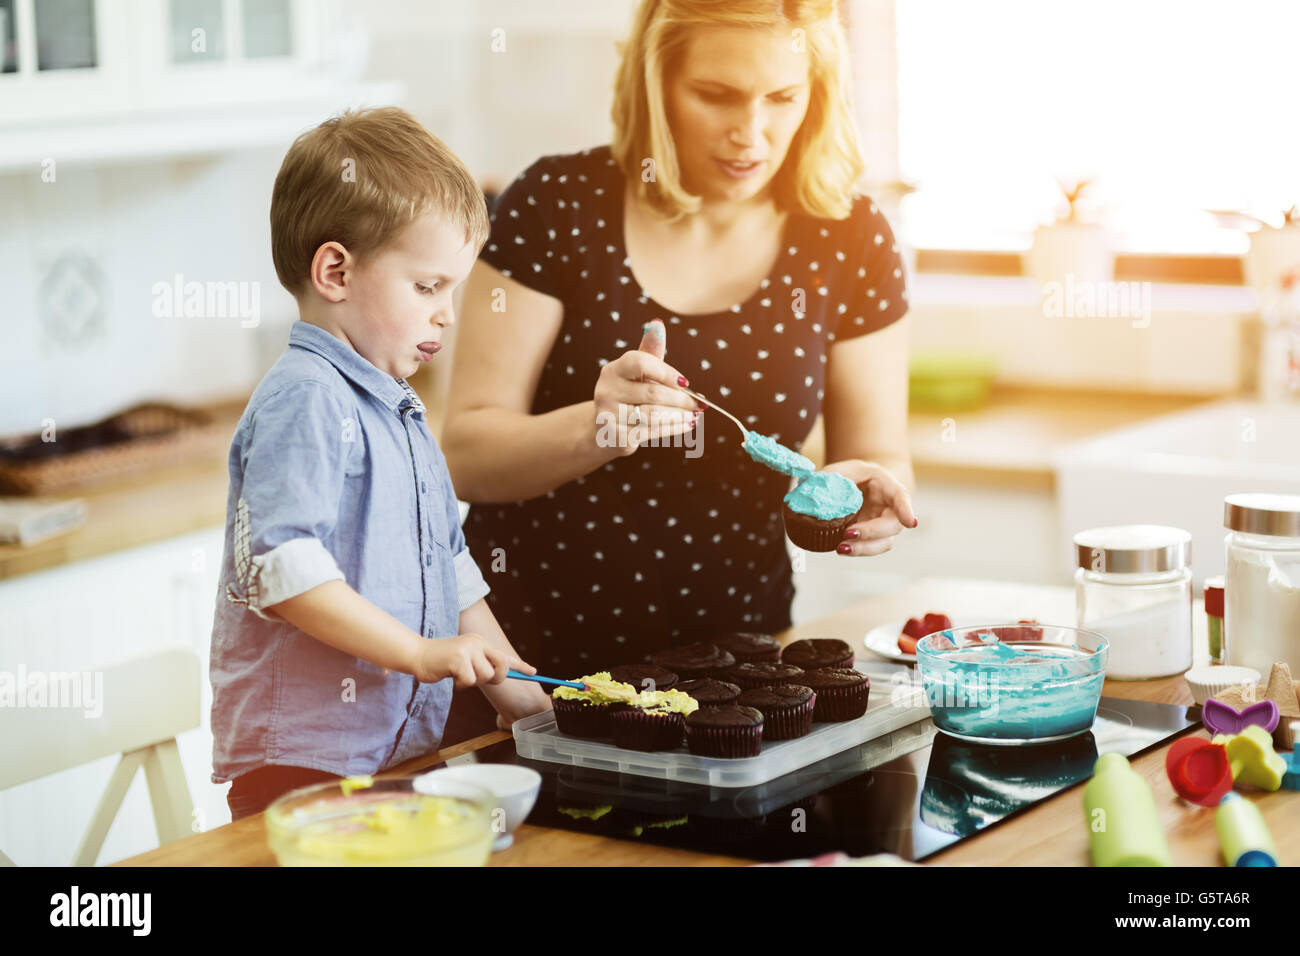 Glückliche Mutter und Kind in der Küche und bereitet cookies Stockfoto